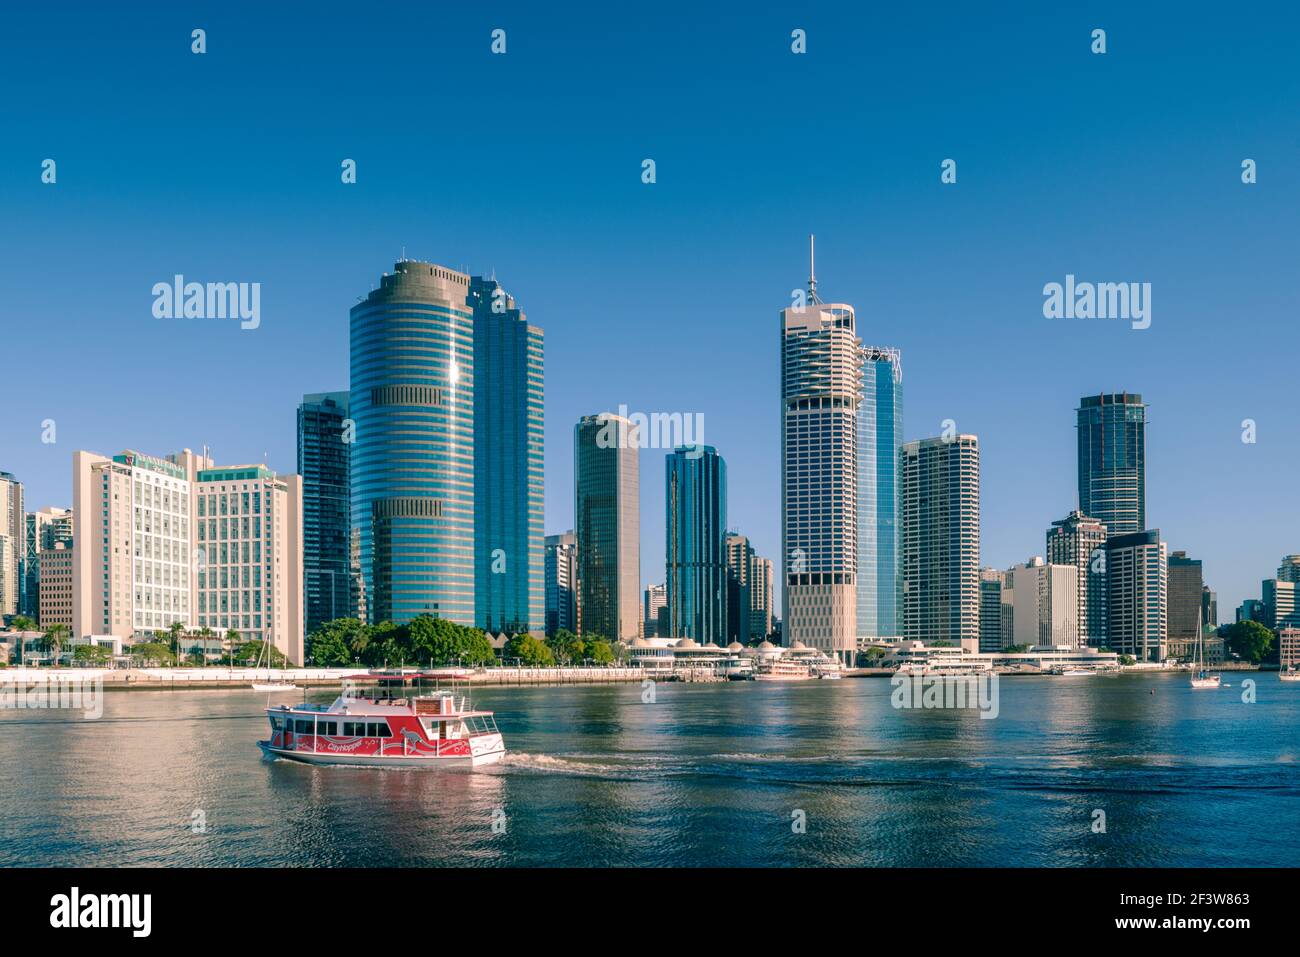 Vue en début de matinée sur les bâtiments de la ville de Brisbane situés dans la région connue sous le nom de Waterfront place. Brisbane est la capitale de l'État du Queensland, en Australie. Banque D'Images